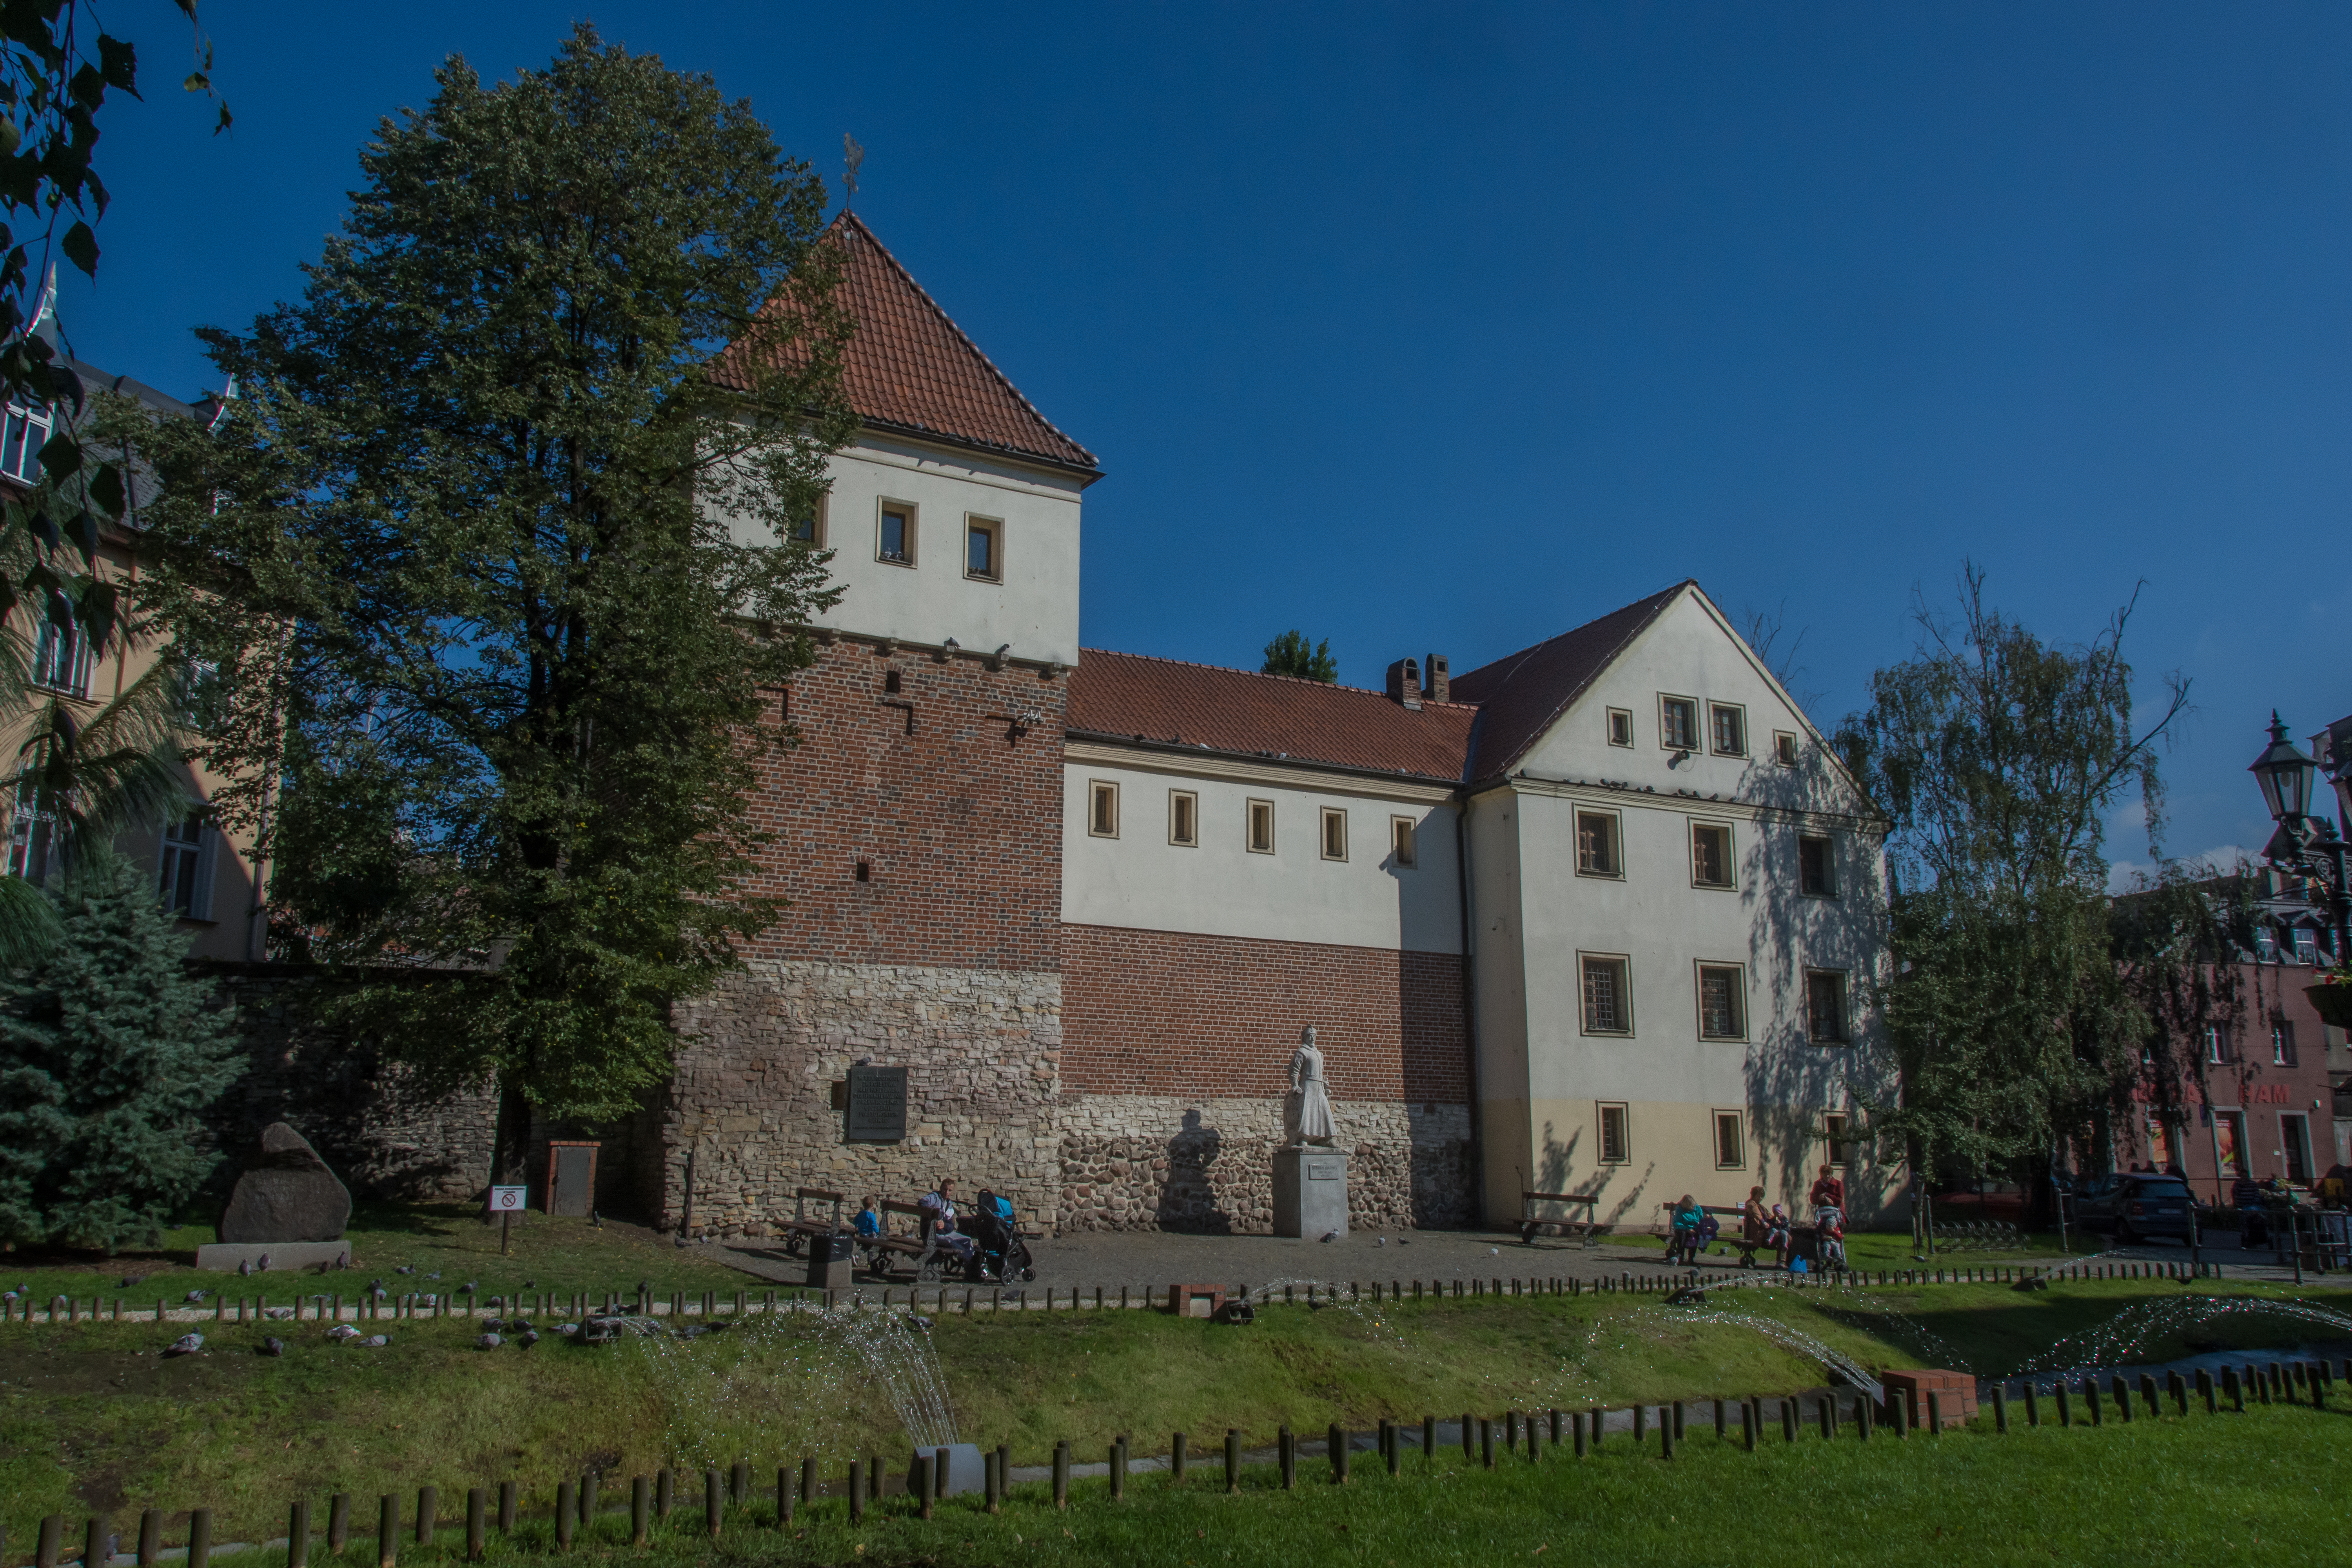 The Piast Castle